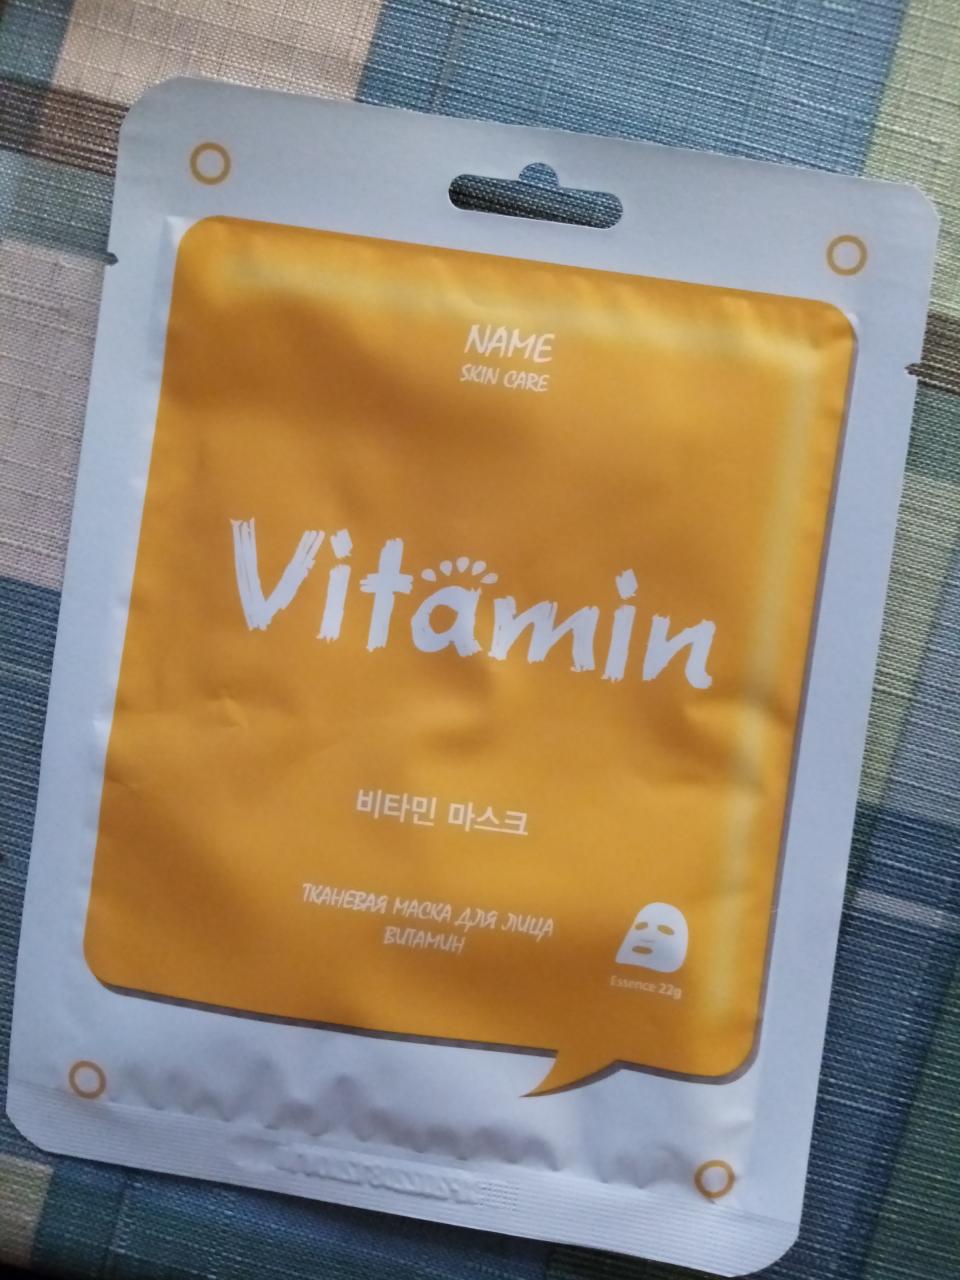 Отзыв на товар: Тканевая маска для лица Витамины. Mijin Cosmetics. Вид 1 от 18.04.2021 